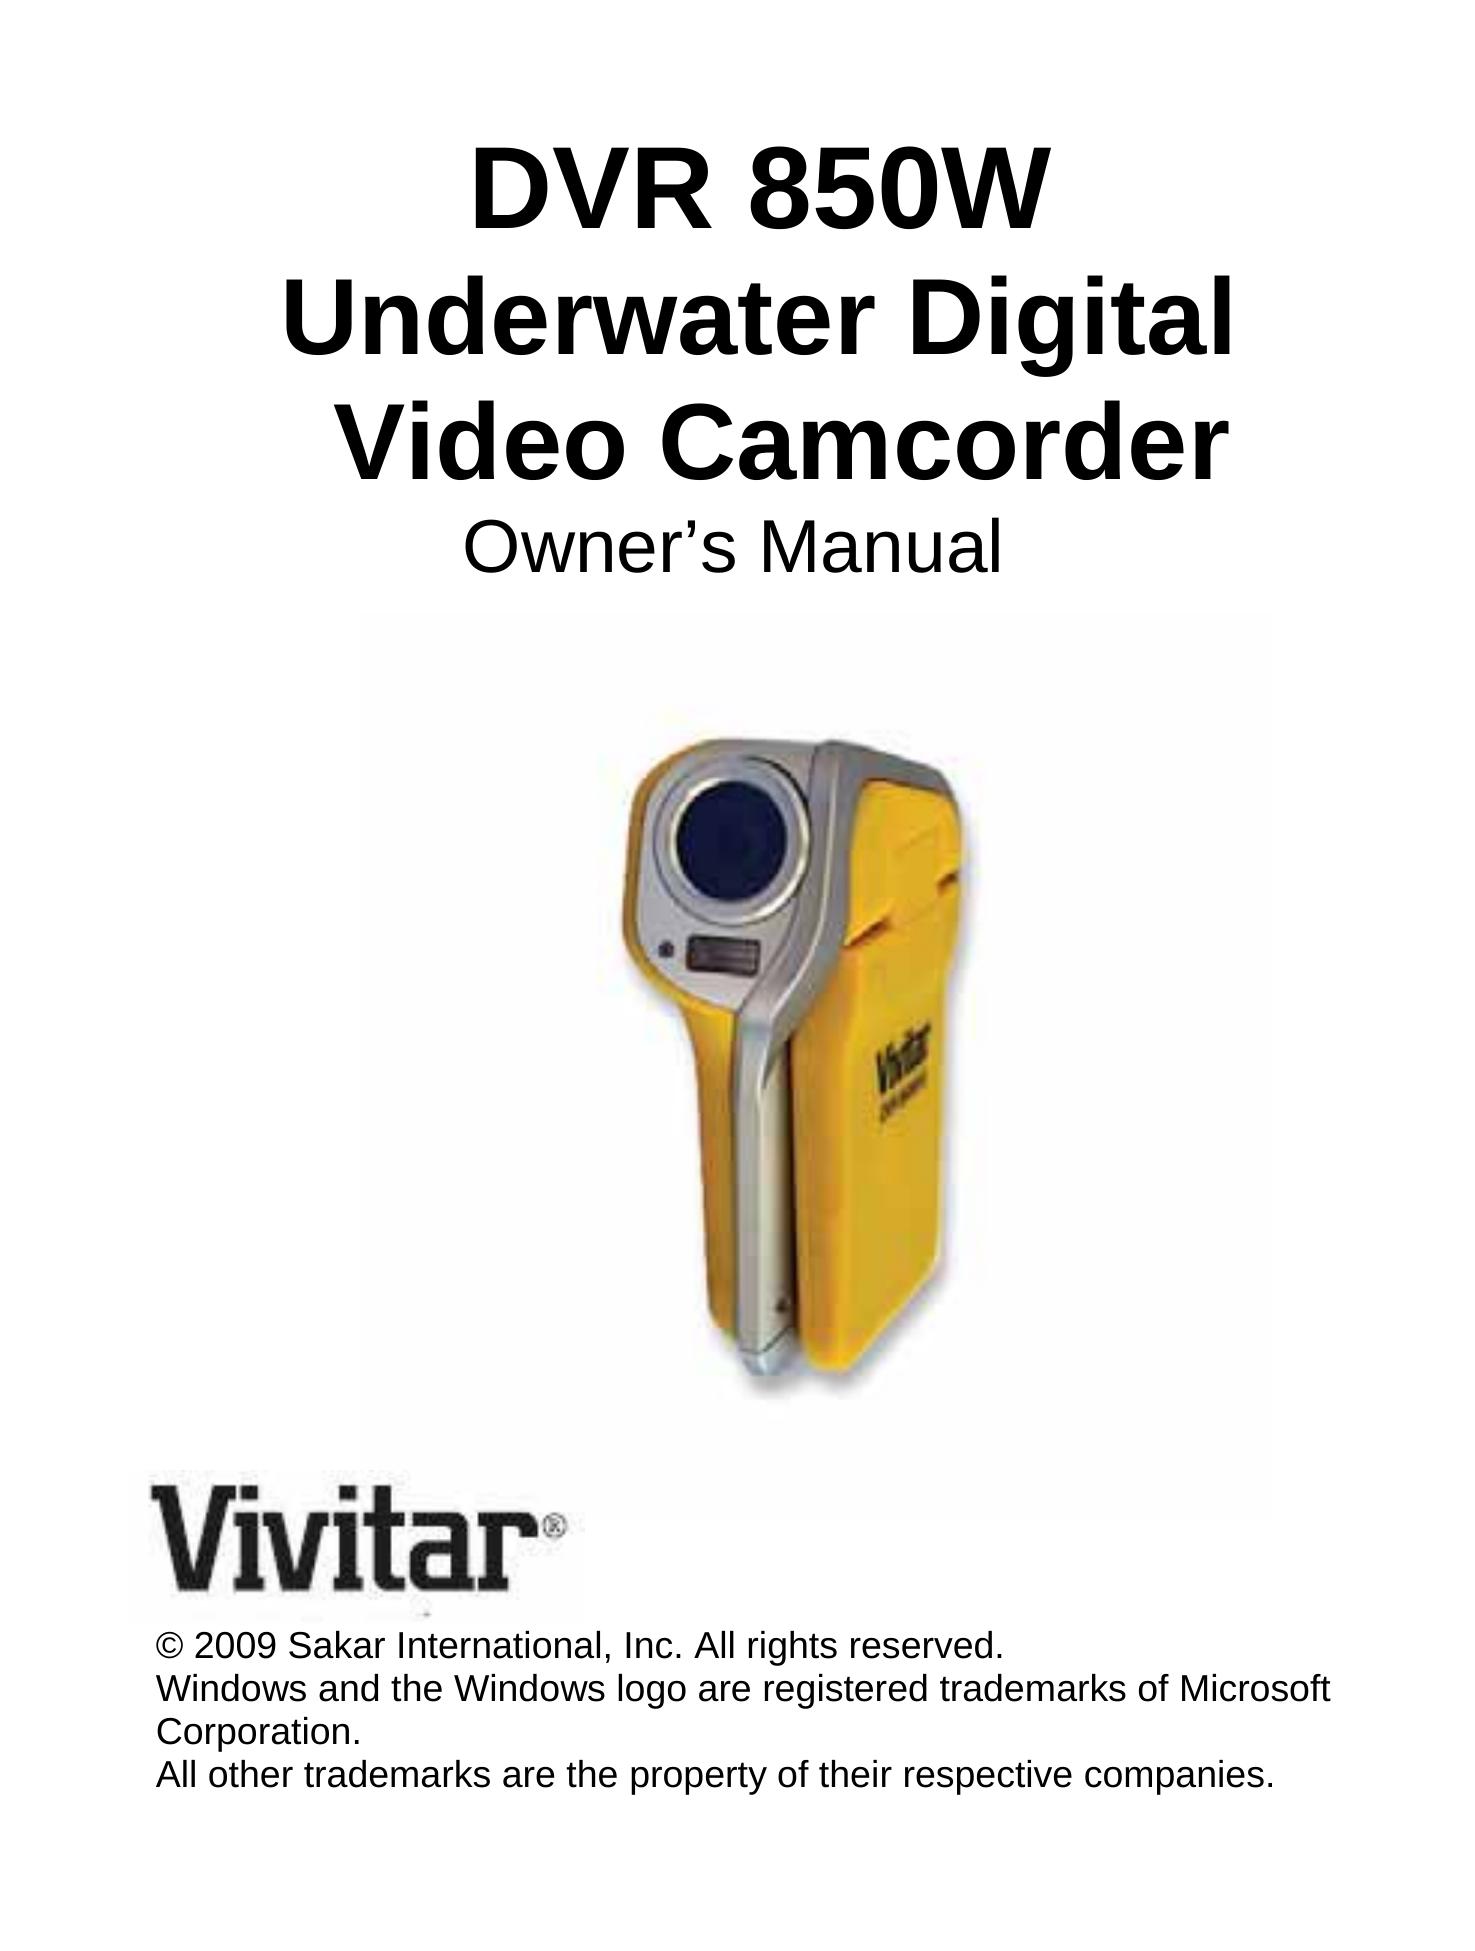 Vivitar DVR 850W Camcorder User Manual